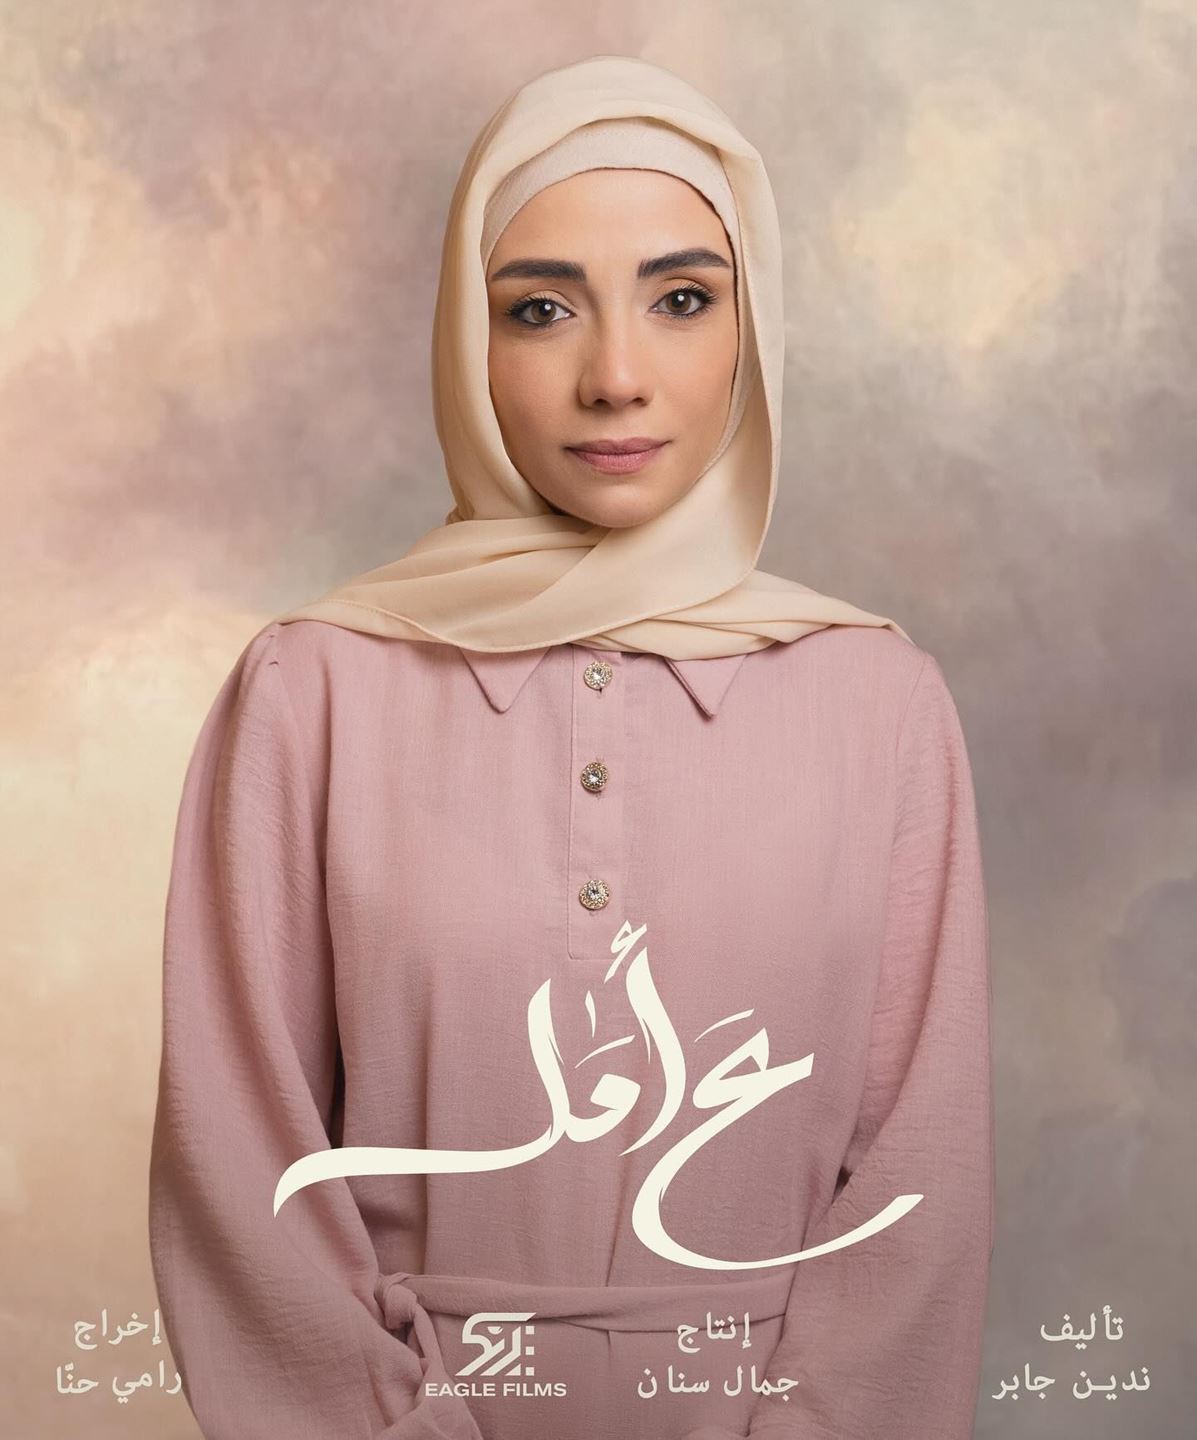 من الممثلة التي لعبت دور "رهف" في المسلسل اللبناني "على أمل"؟